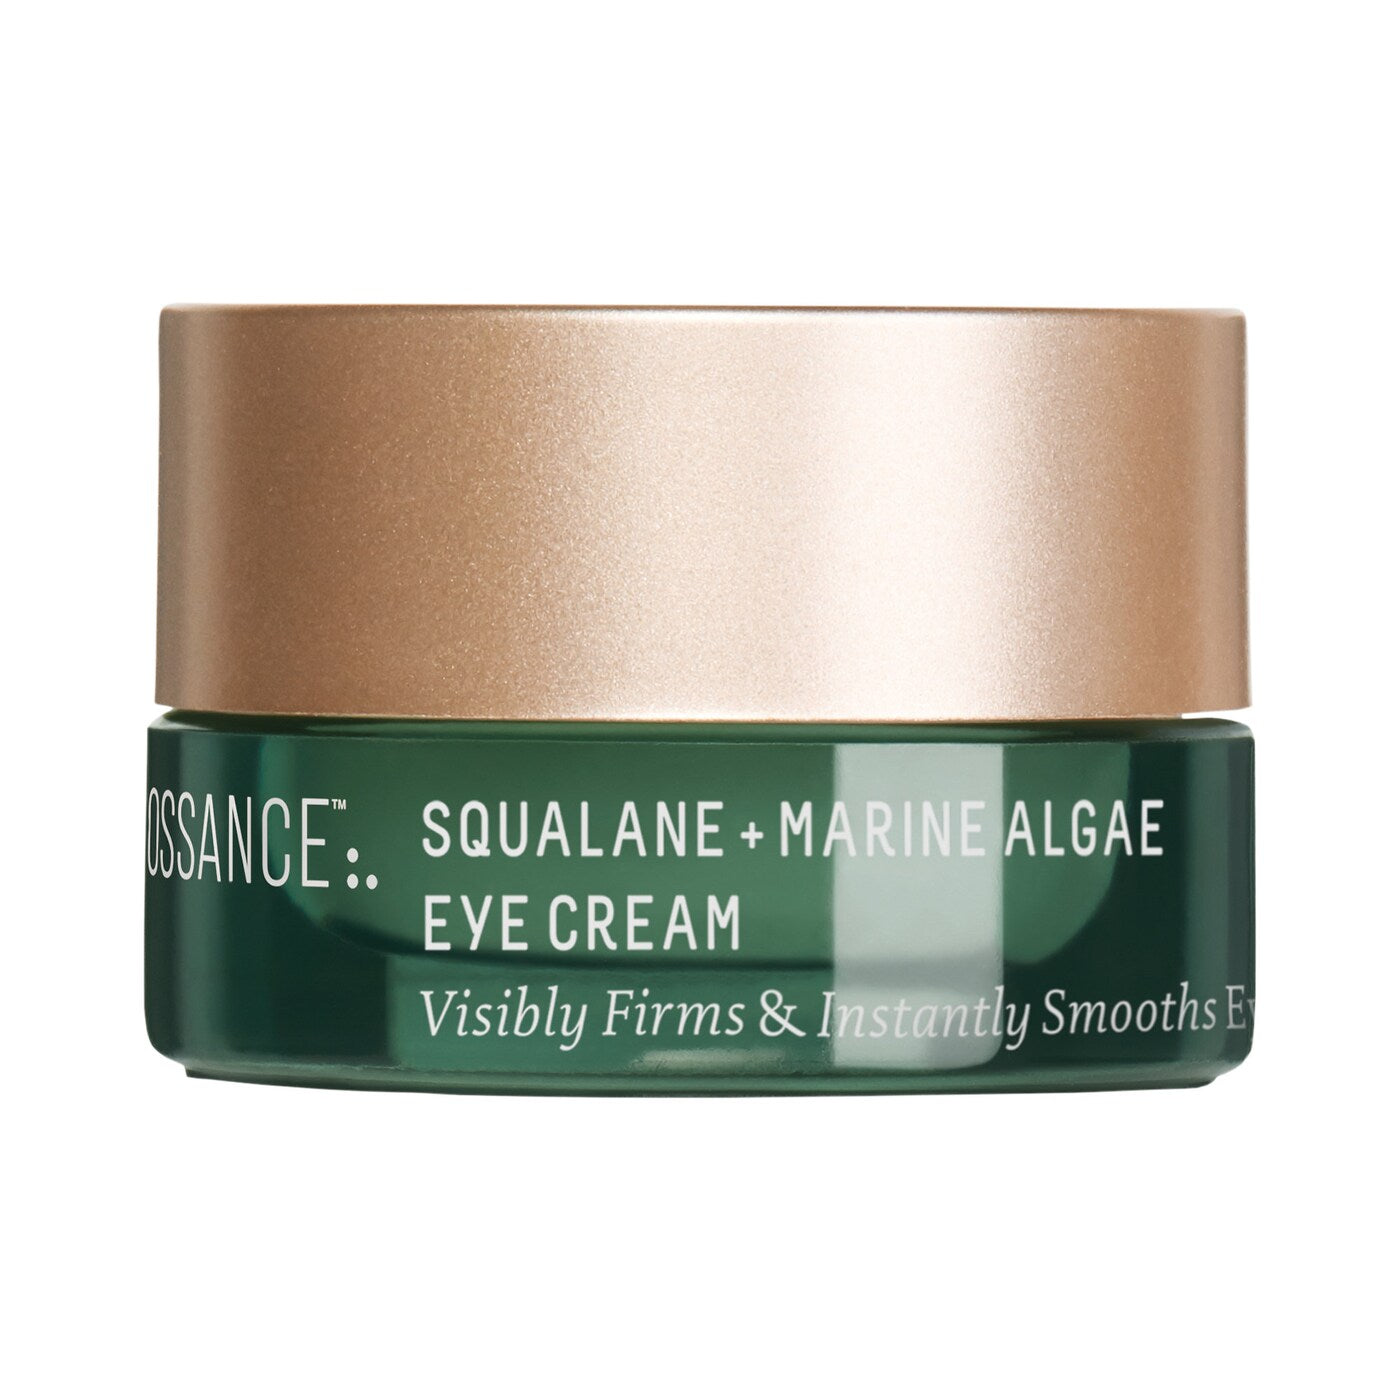 Squalane + Marine Algae Eye Cream trial size